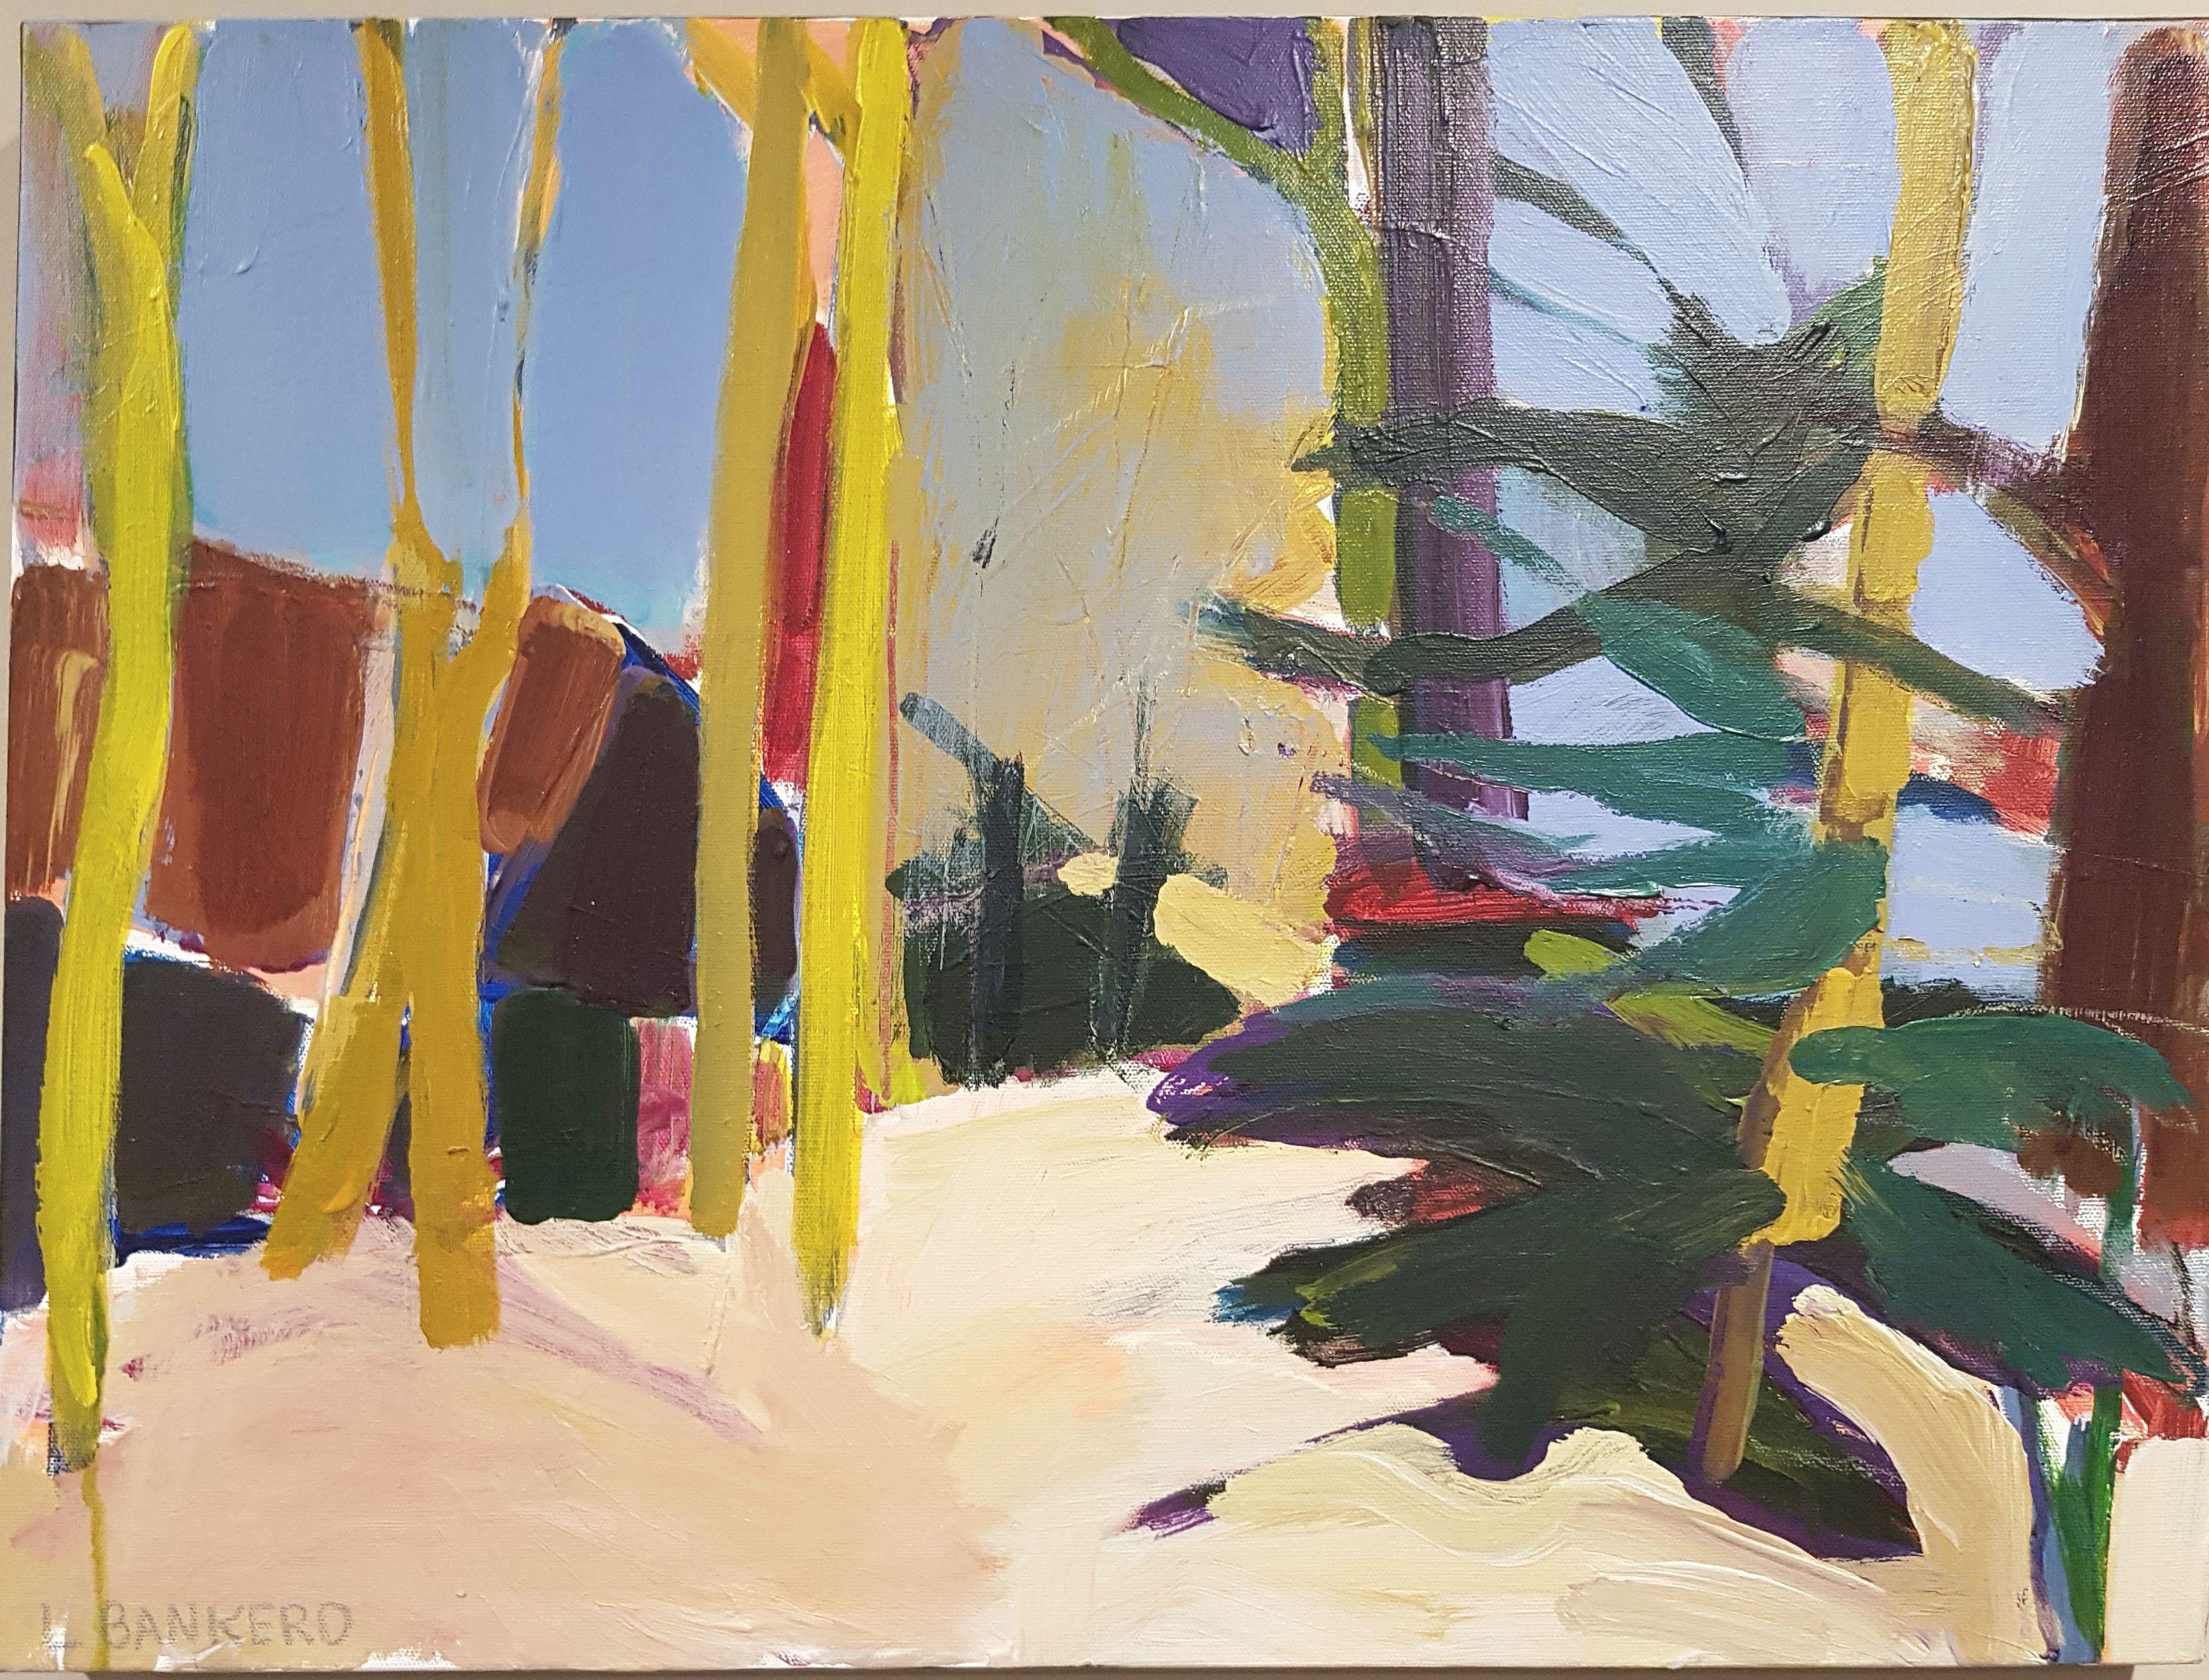 Peinture, acrylique sur toile, Lakes de la forêt Arizona n° 2 - Painting de Linda Bankerd